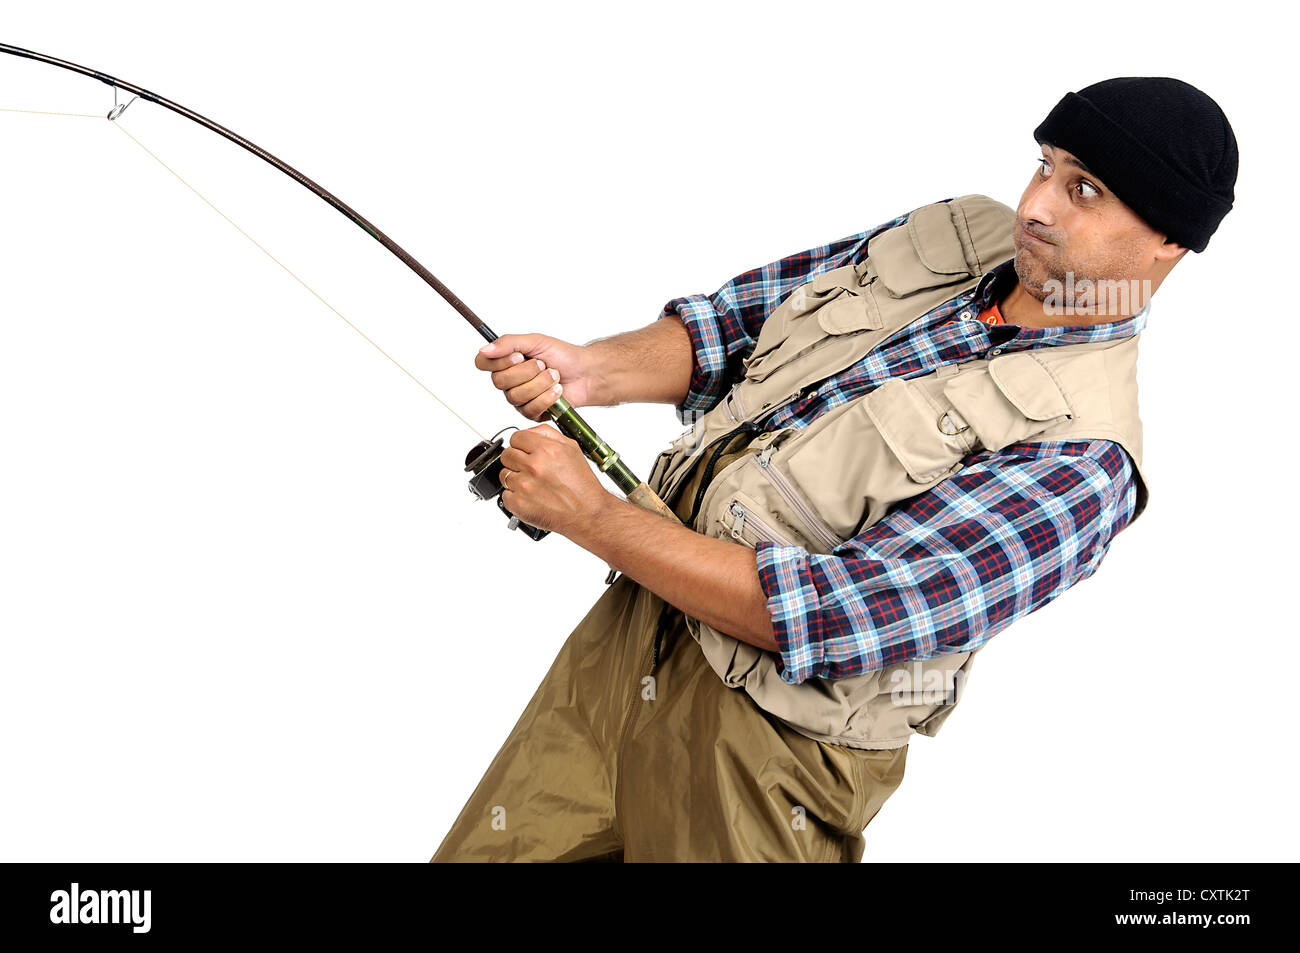 Fishing Rod Isolated on White Stock Image - Image of imitation, design:  137106883